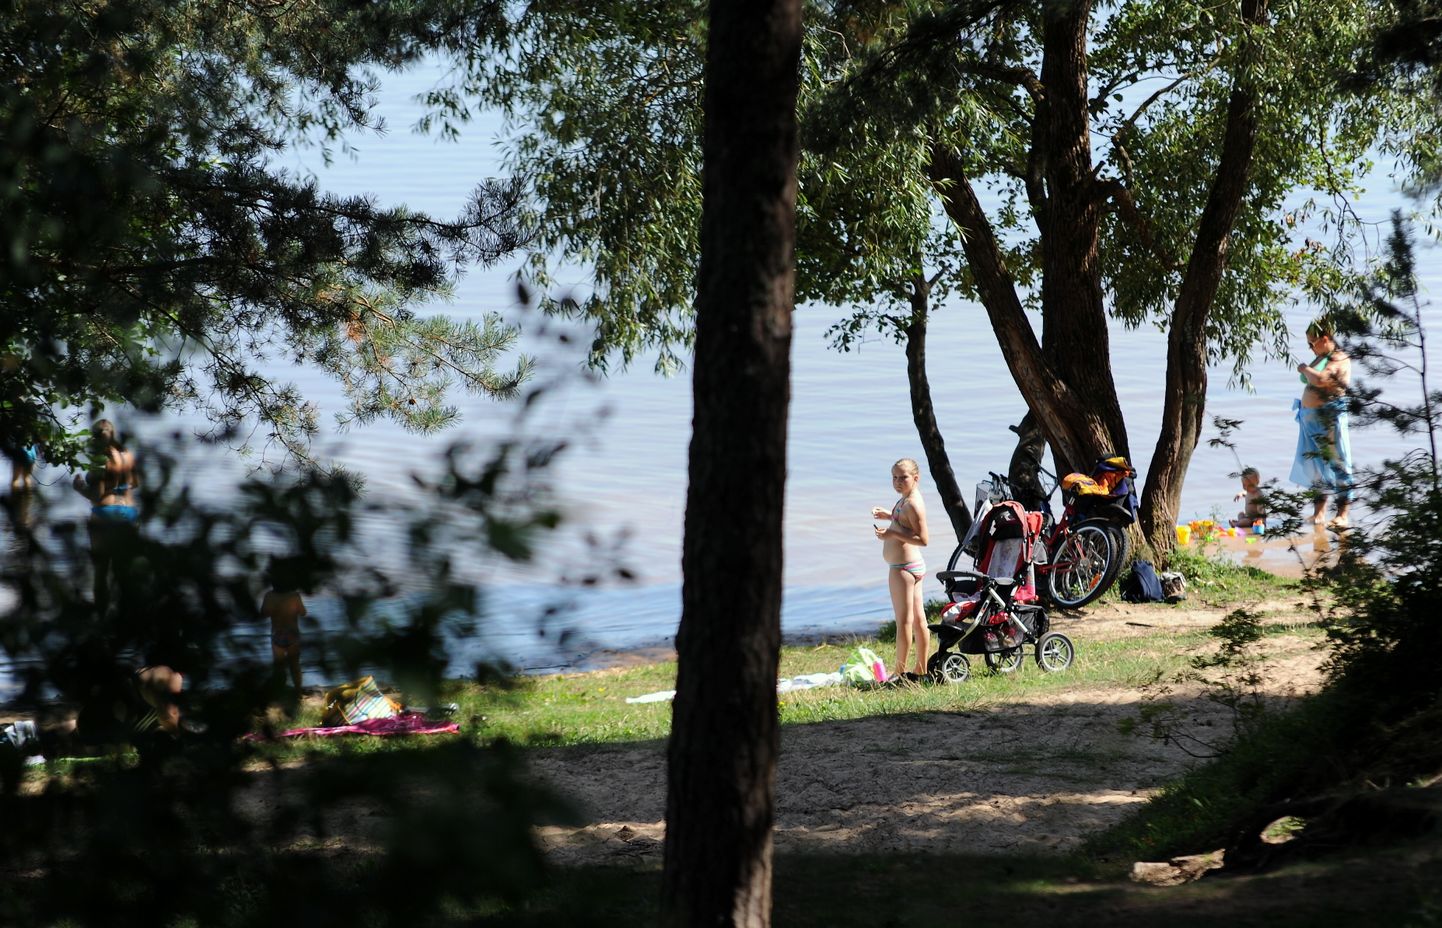 Cilvēki peldvietā pie Ķīšezera kultūras un atpūtas parkā "Mežaparks". Ilustratīvs foto